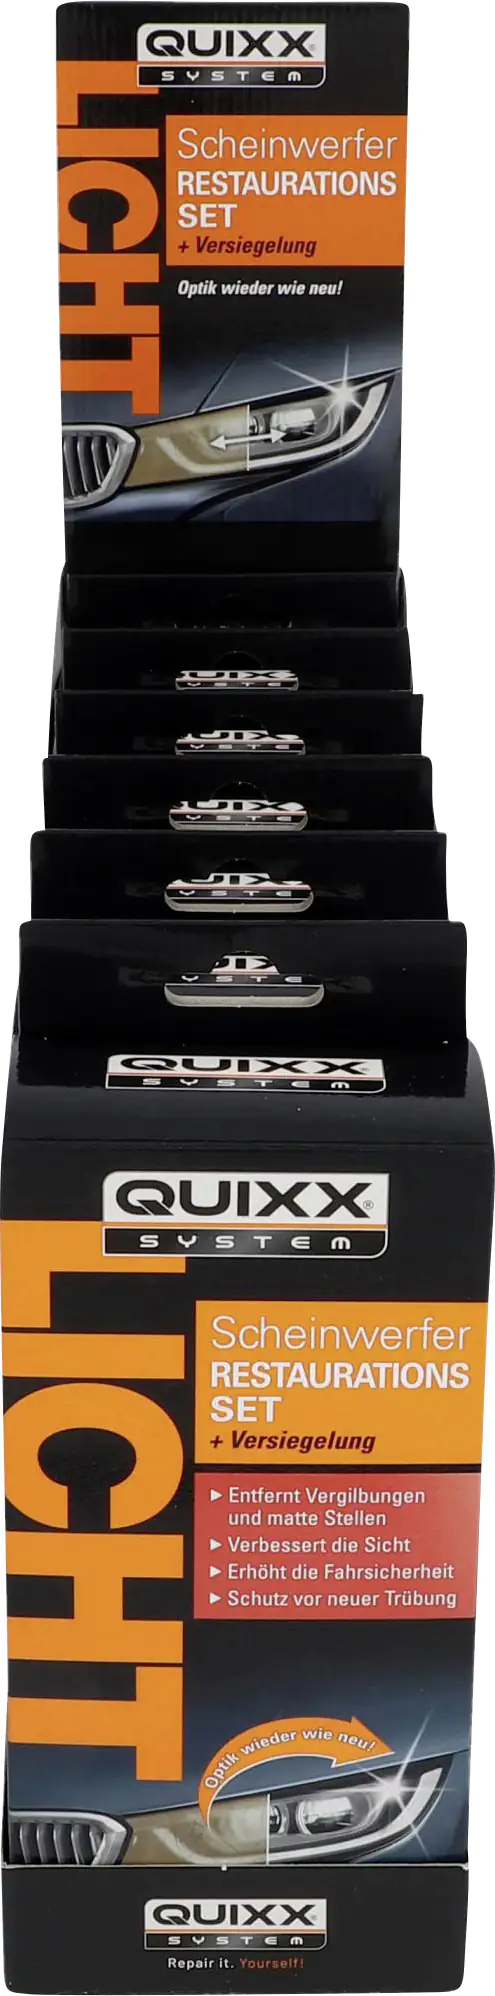 Quixx 50251 Scheinwerfer Restaurations-Set, Scheinwerfer Reparatur,  Politur